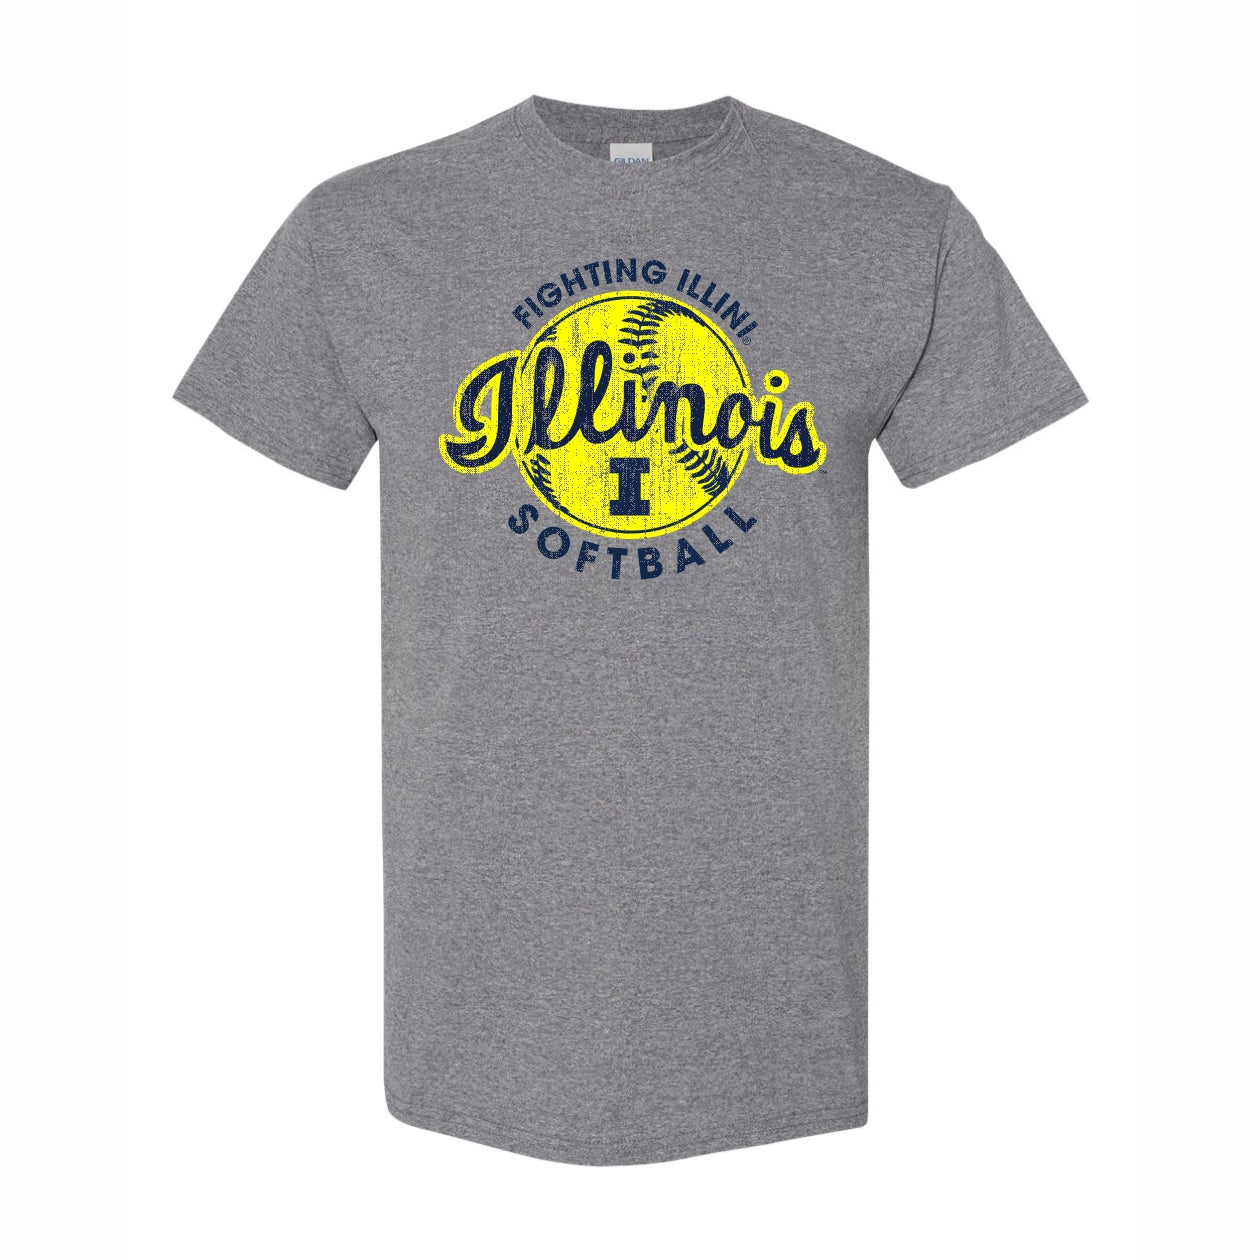 Illinois Fighting Illini softball legends jersey